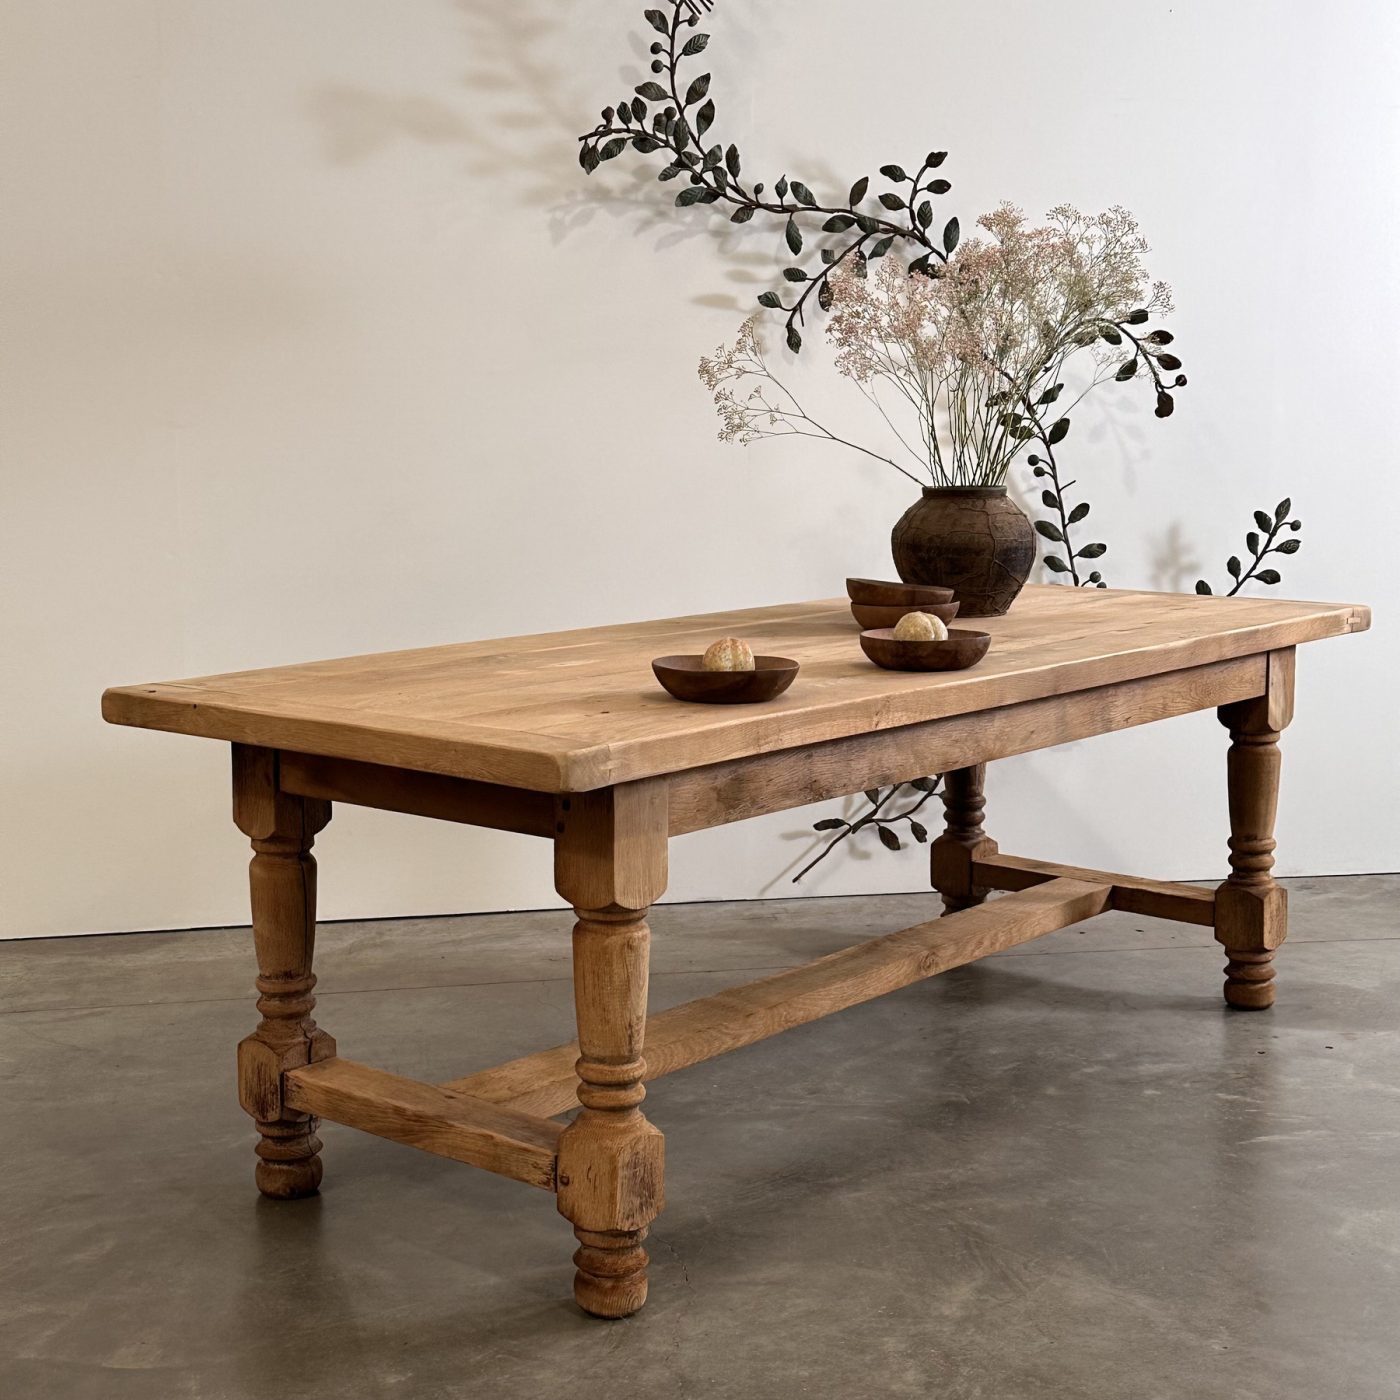 objet-vagabond-oak-table0002